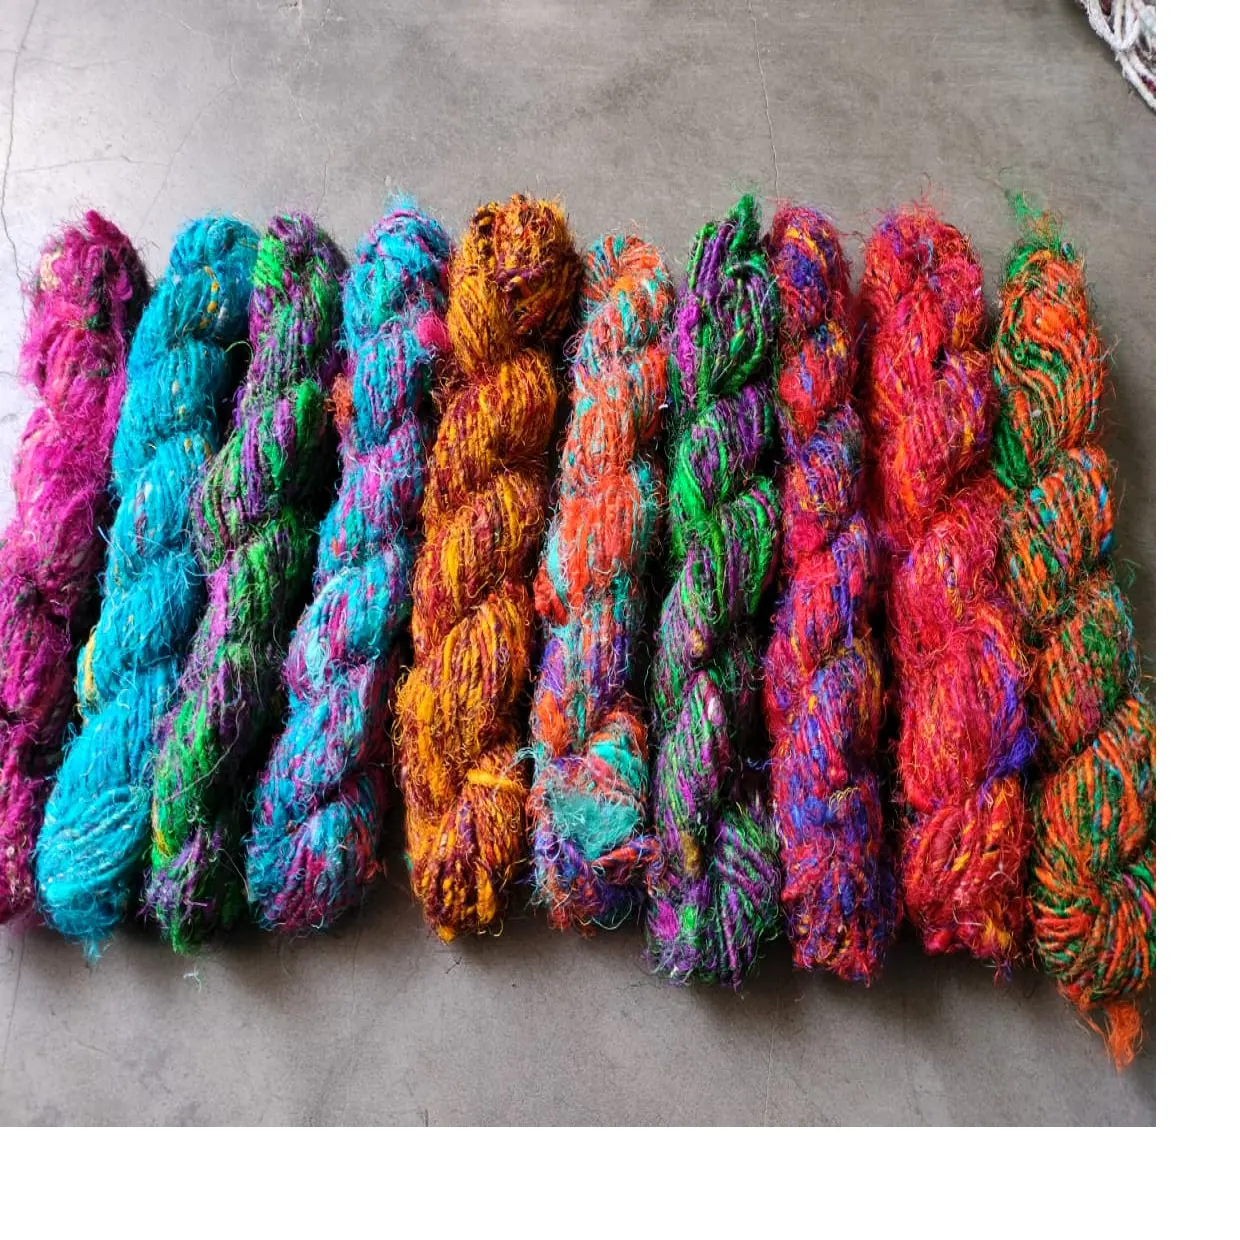 Hilos de seda multicolores hechos a medida, hechos de seda reciclada, disponibles en varios colores